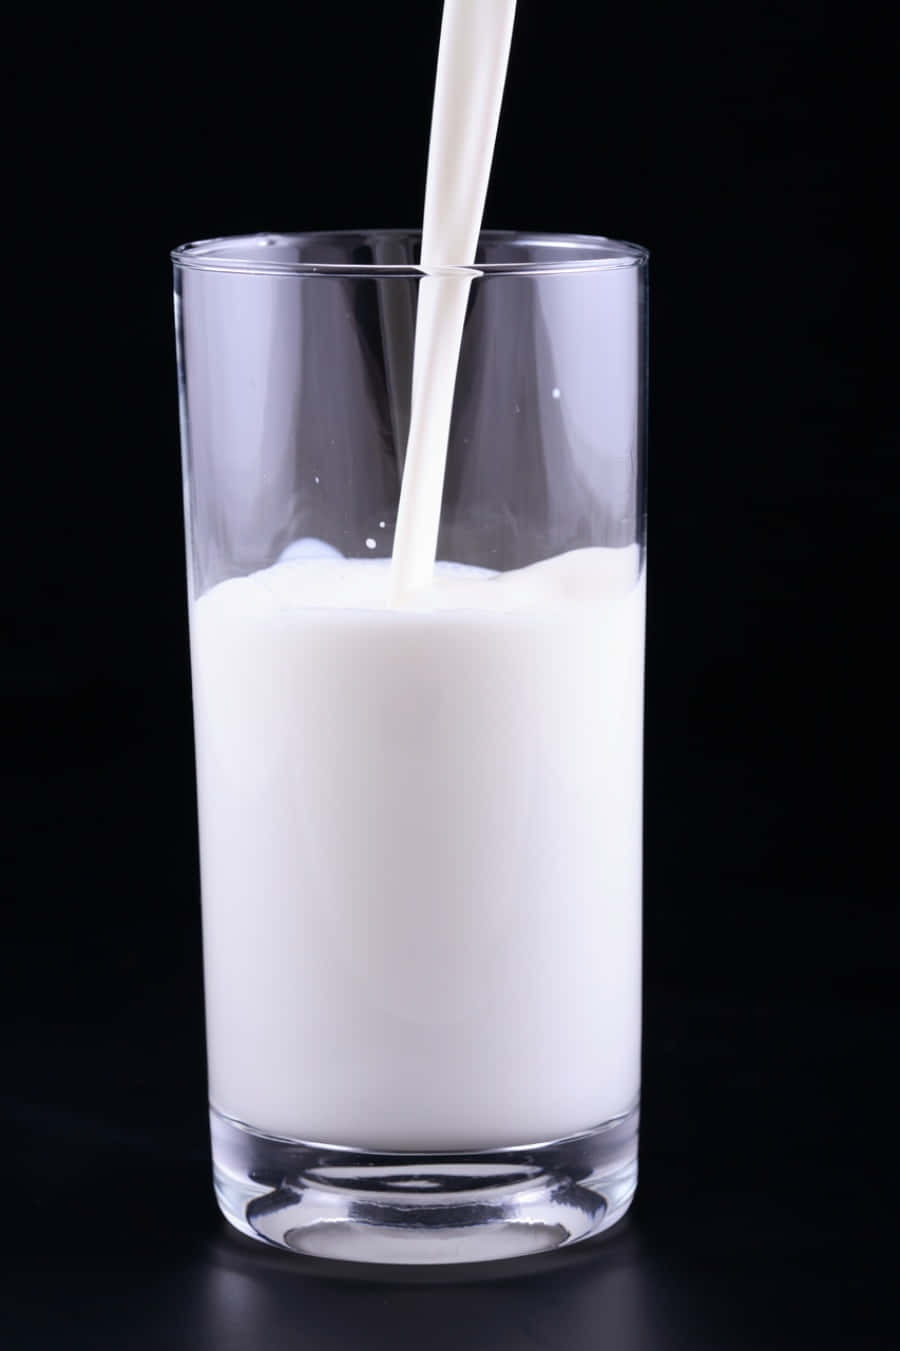 Фотка Milk